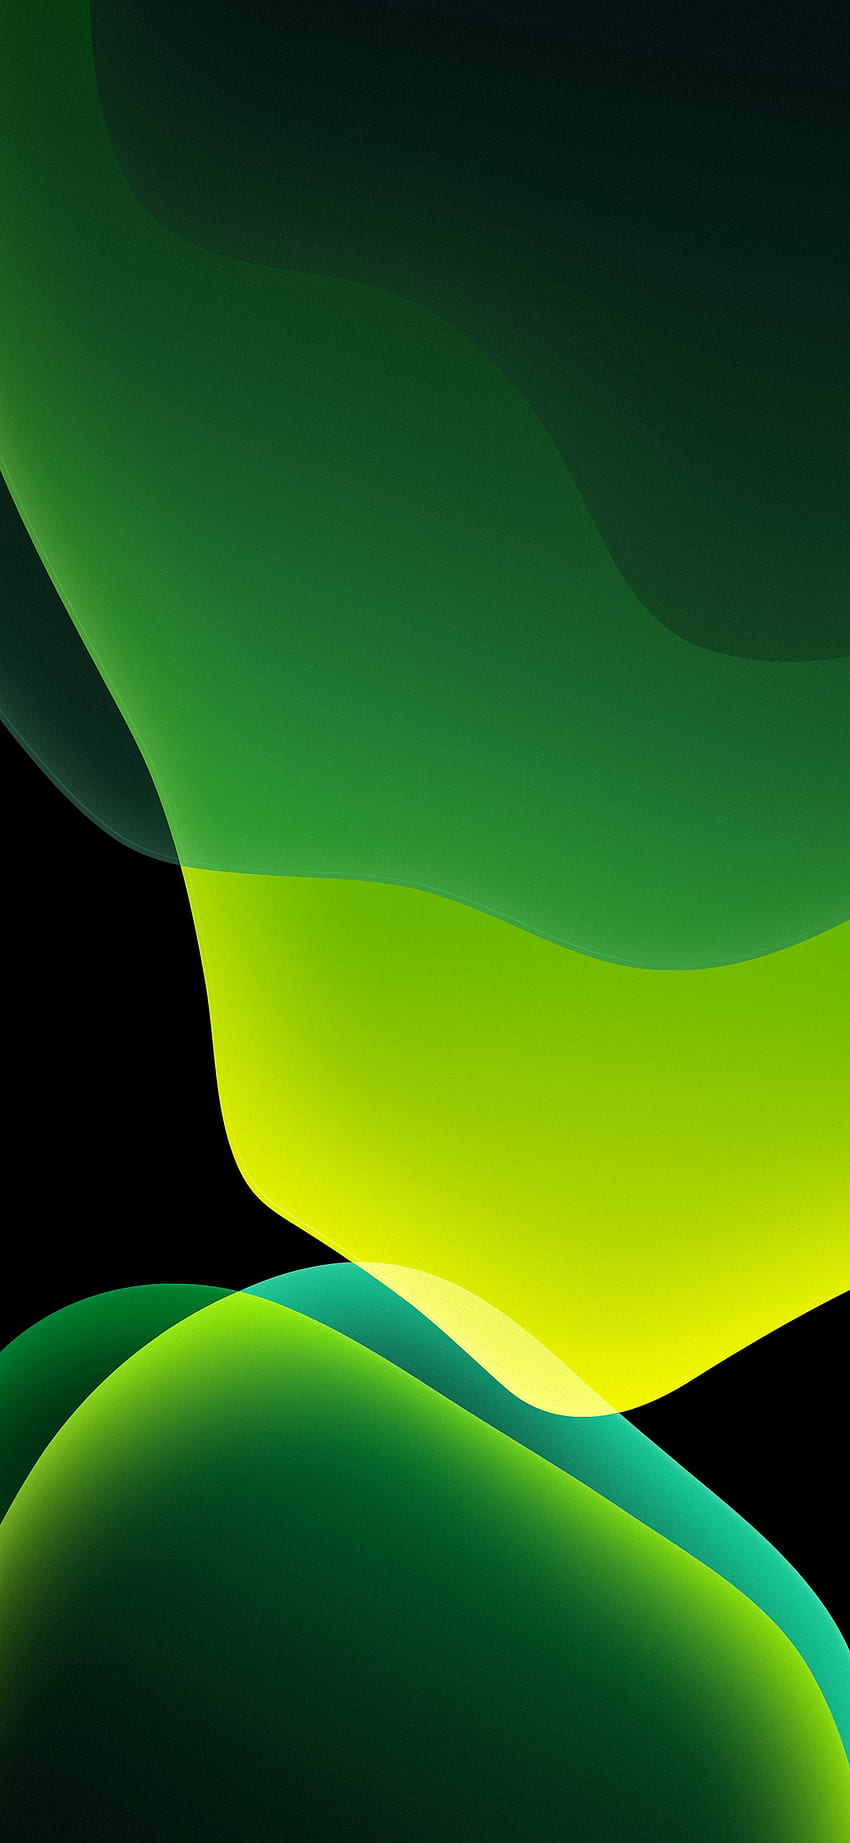 iOS 13 Official Stock (Ultra ) – Green Dark, Super Light Green HD phone wallpaper